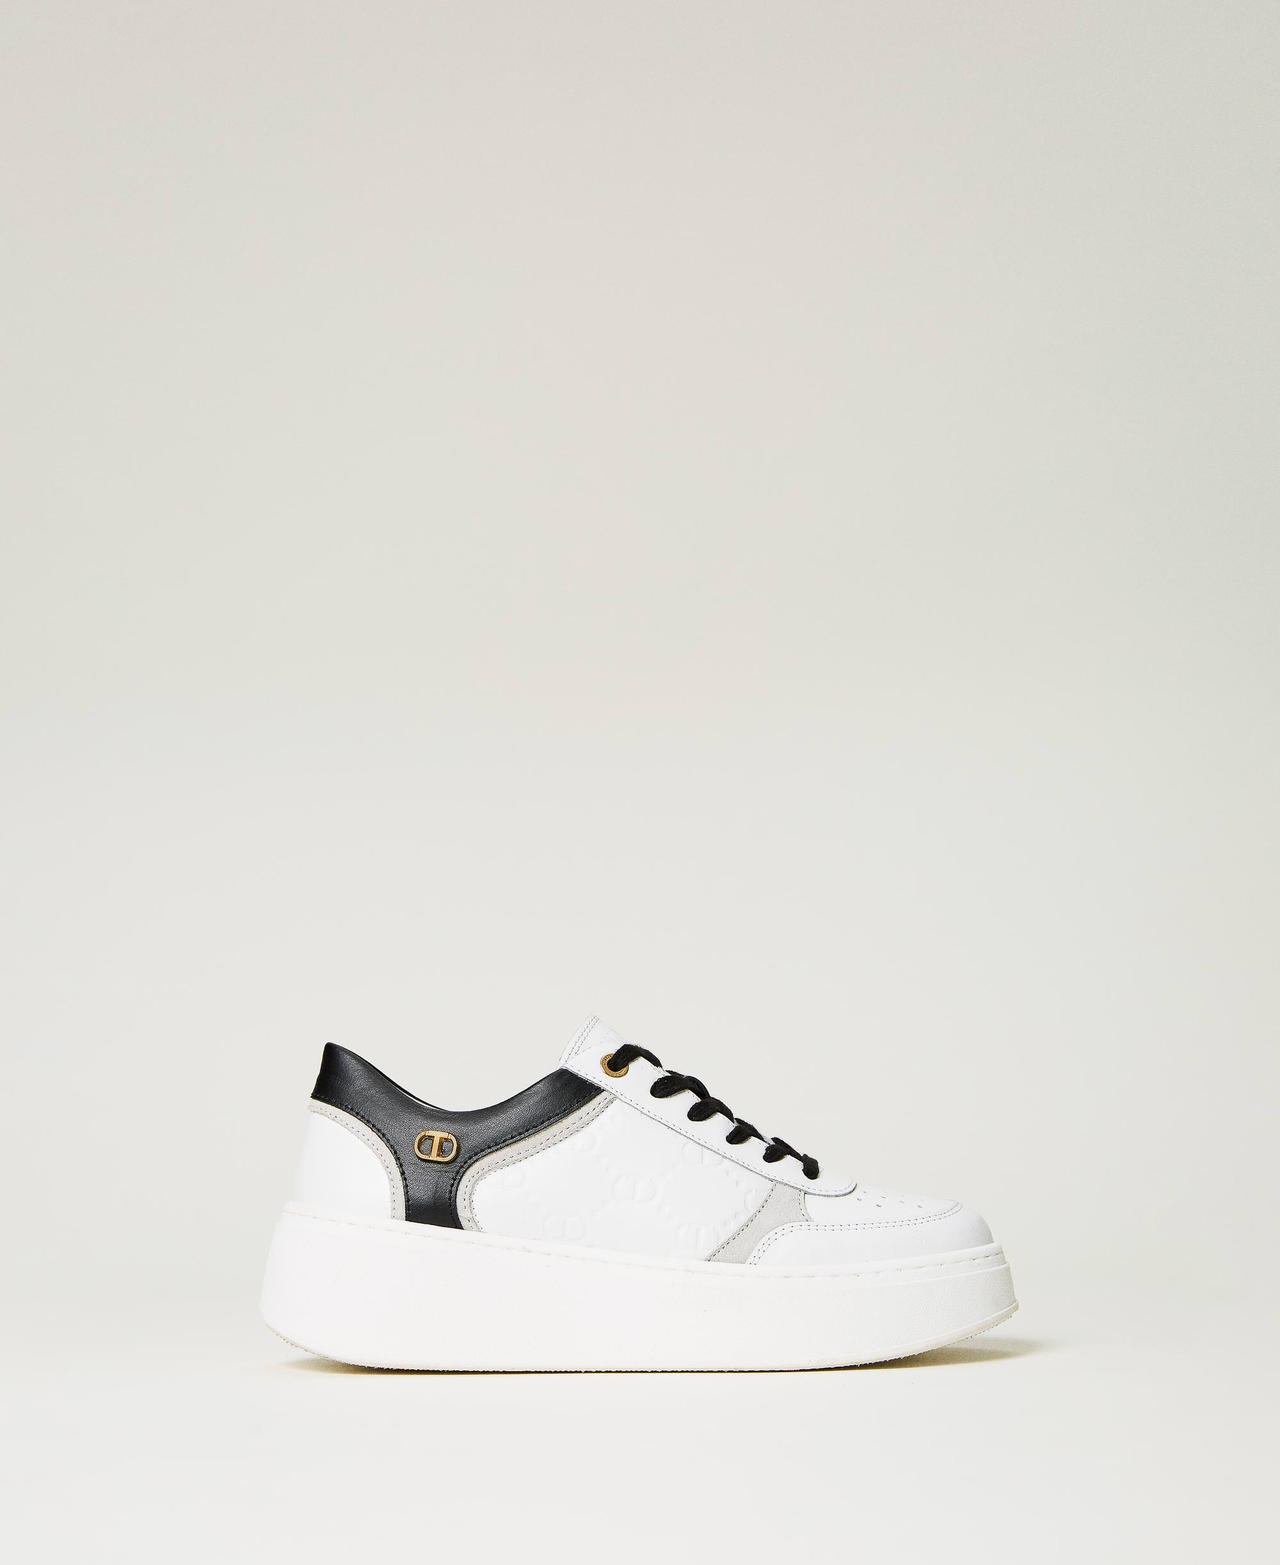 twinset scarpe - sneakers platform in pelle, bicolor off white / nero, taglia: 40 donna